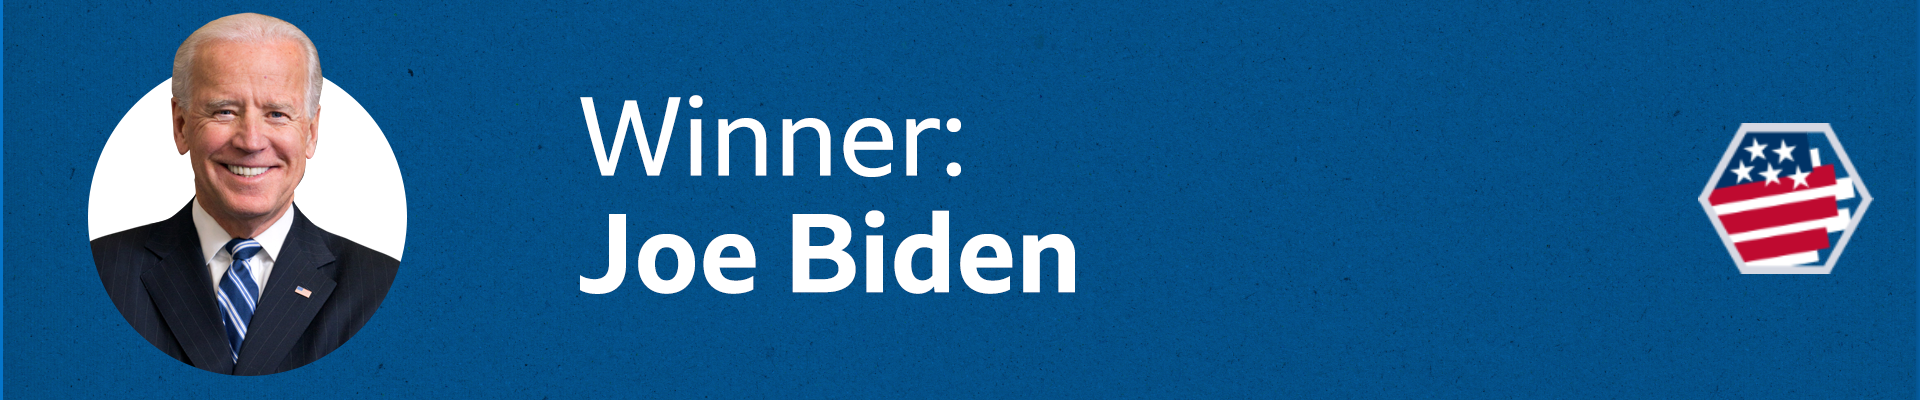 Joe Biden is the winner